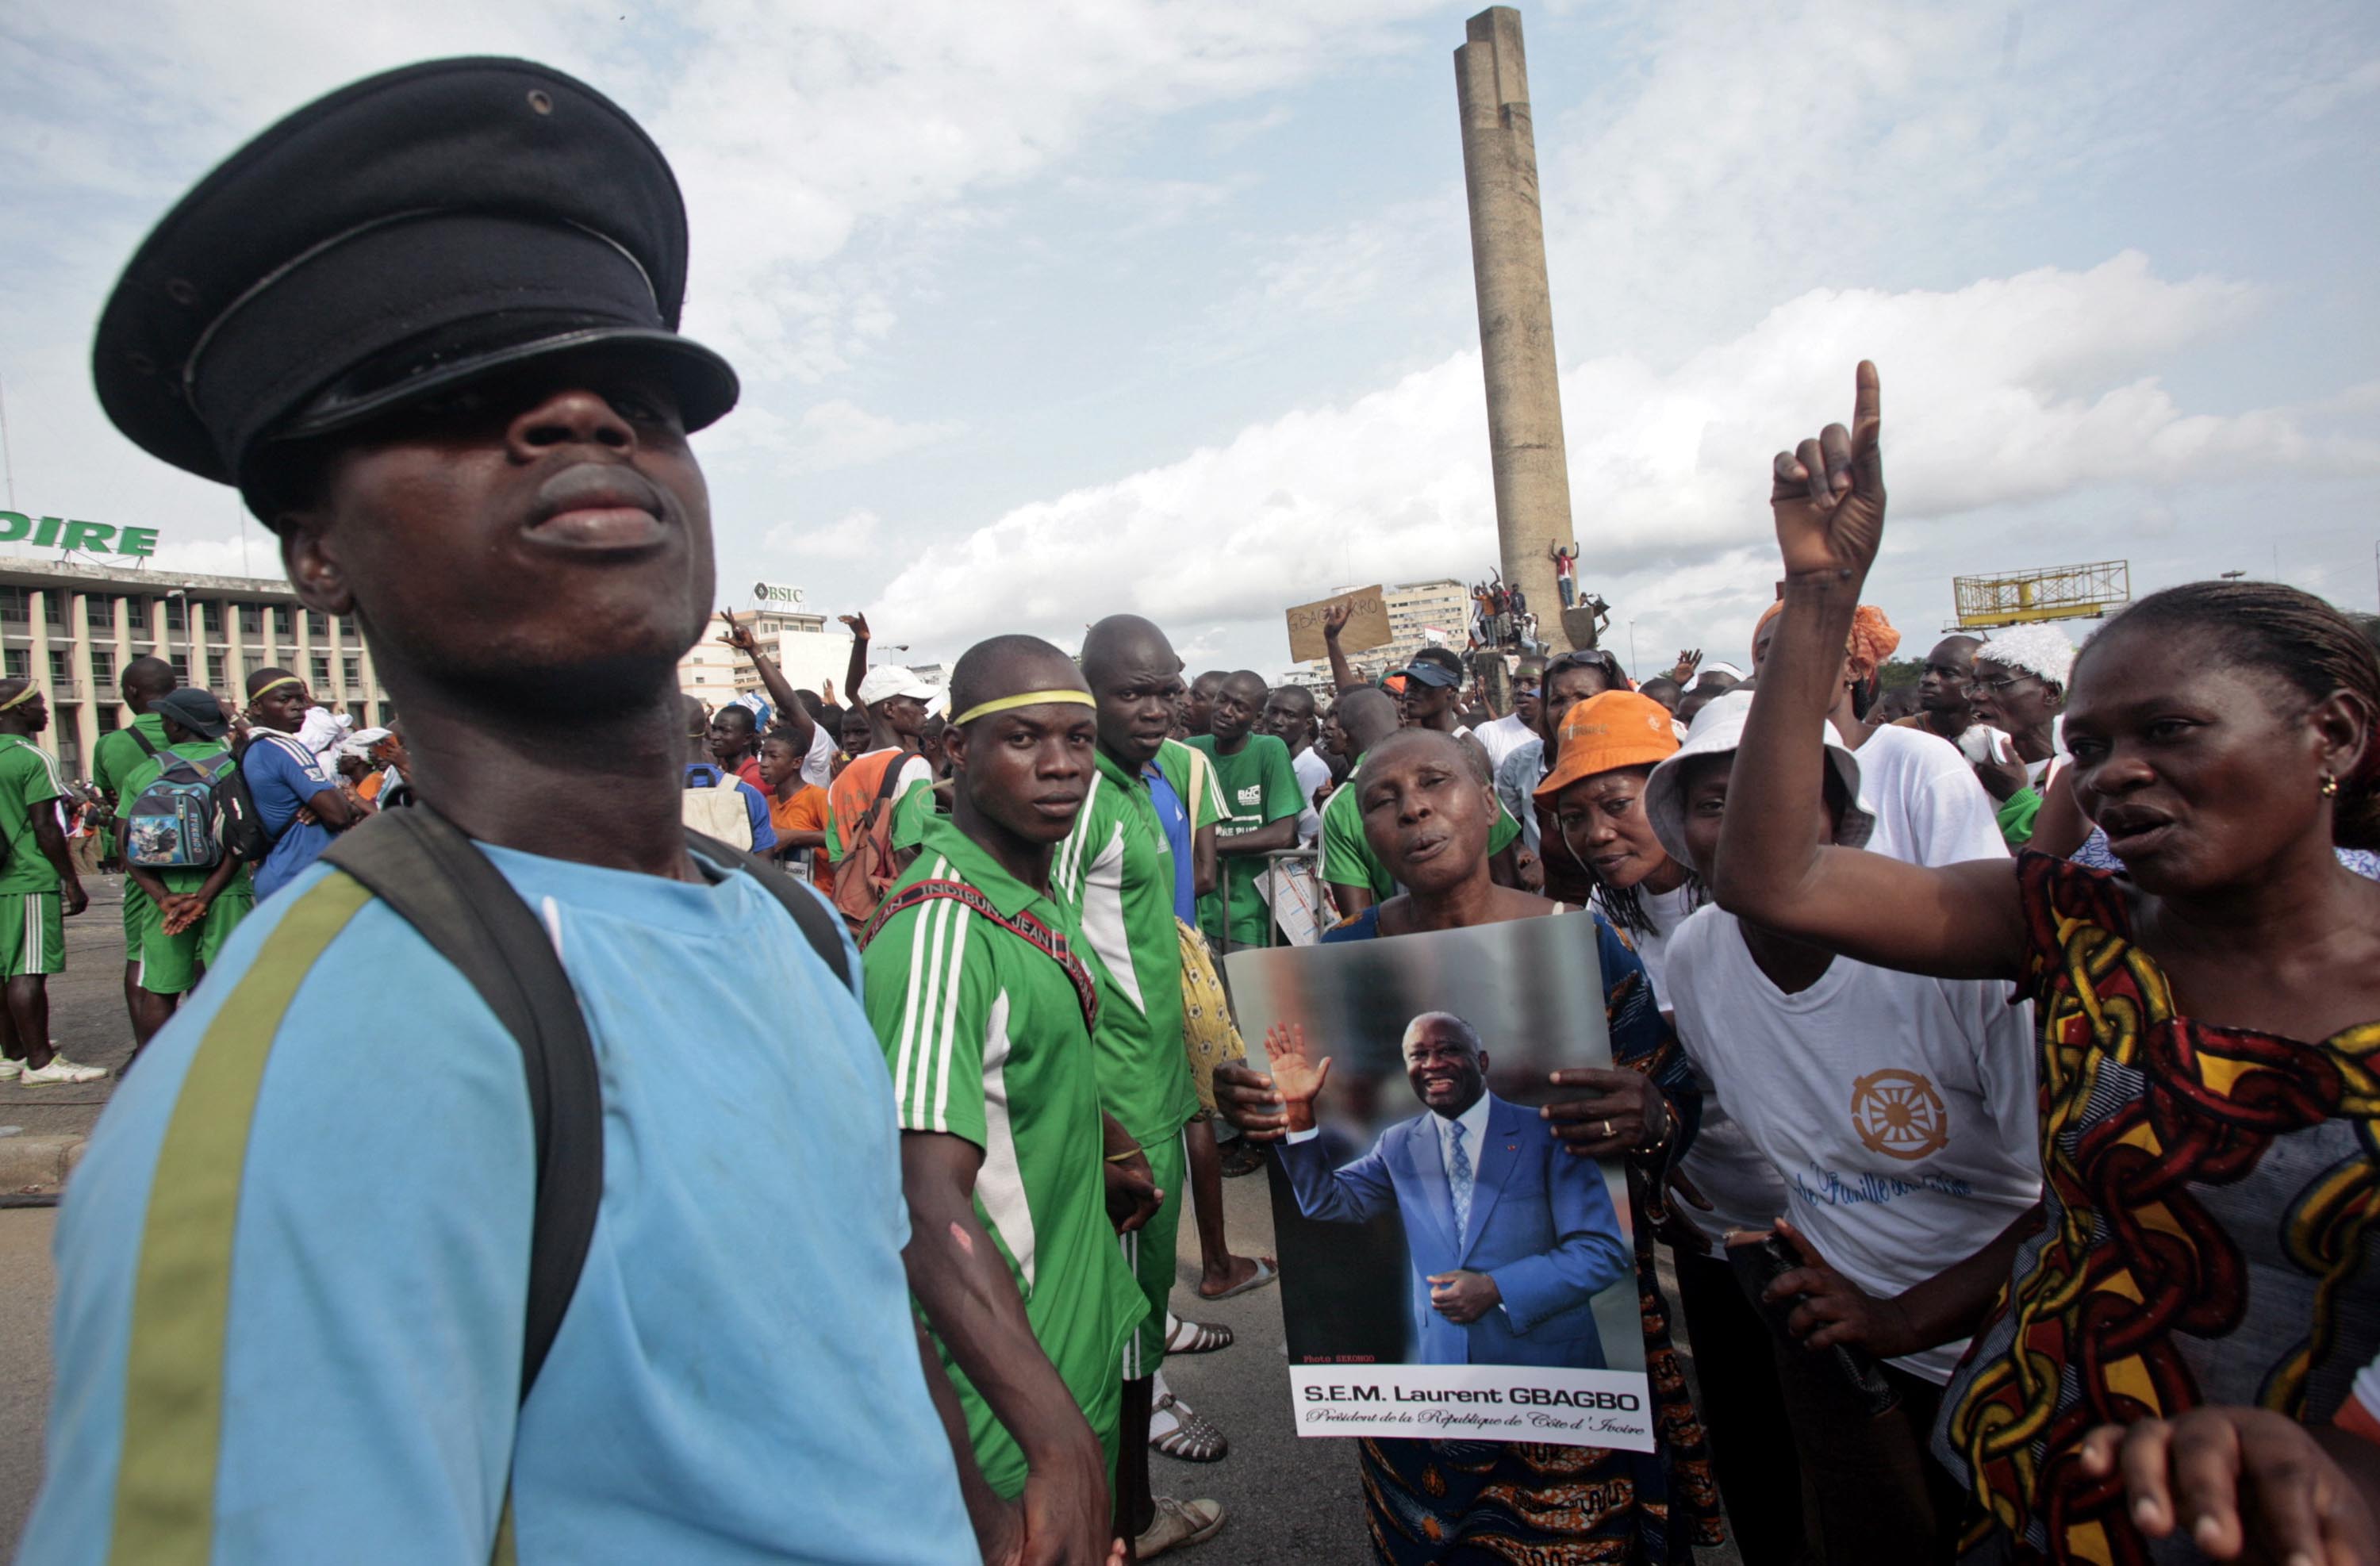 Folket visar sitt stöd för den självutnämnde segraren i presidentvalet Gbagbo. 